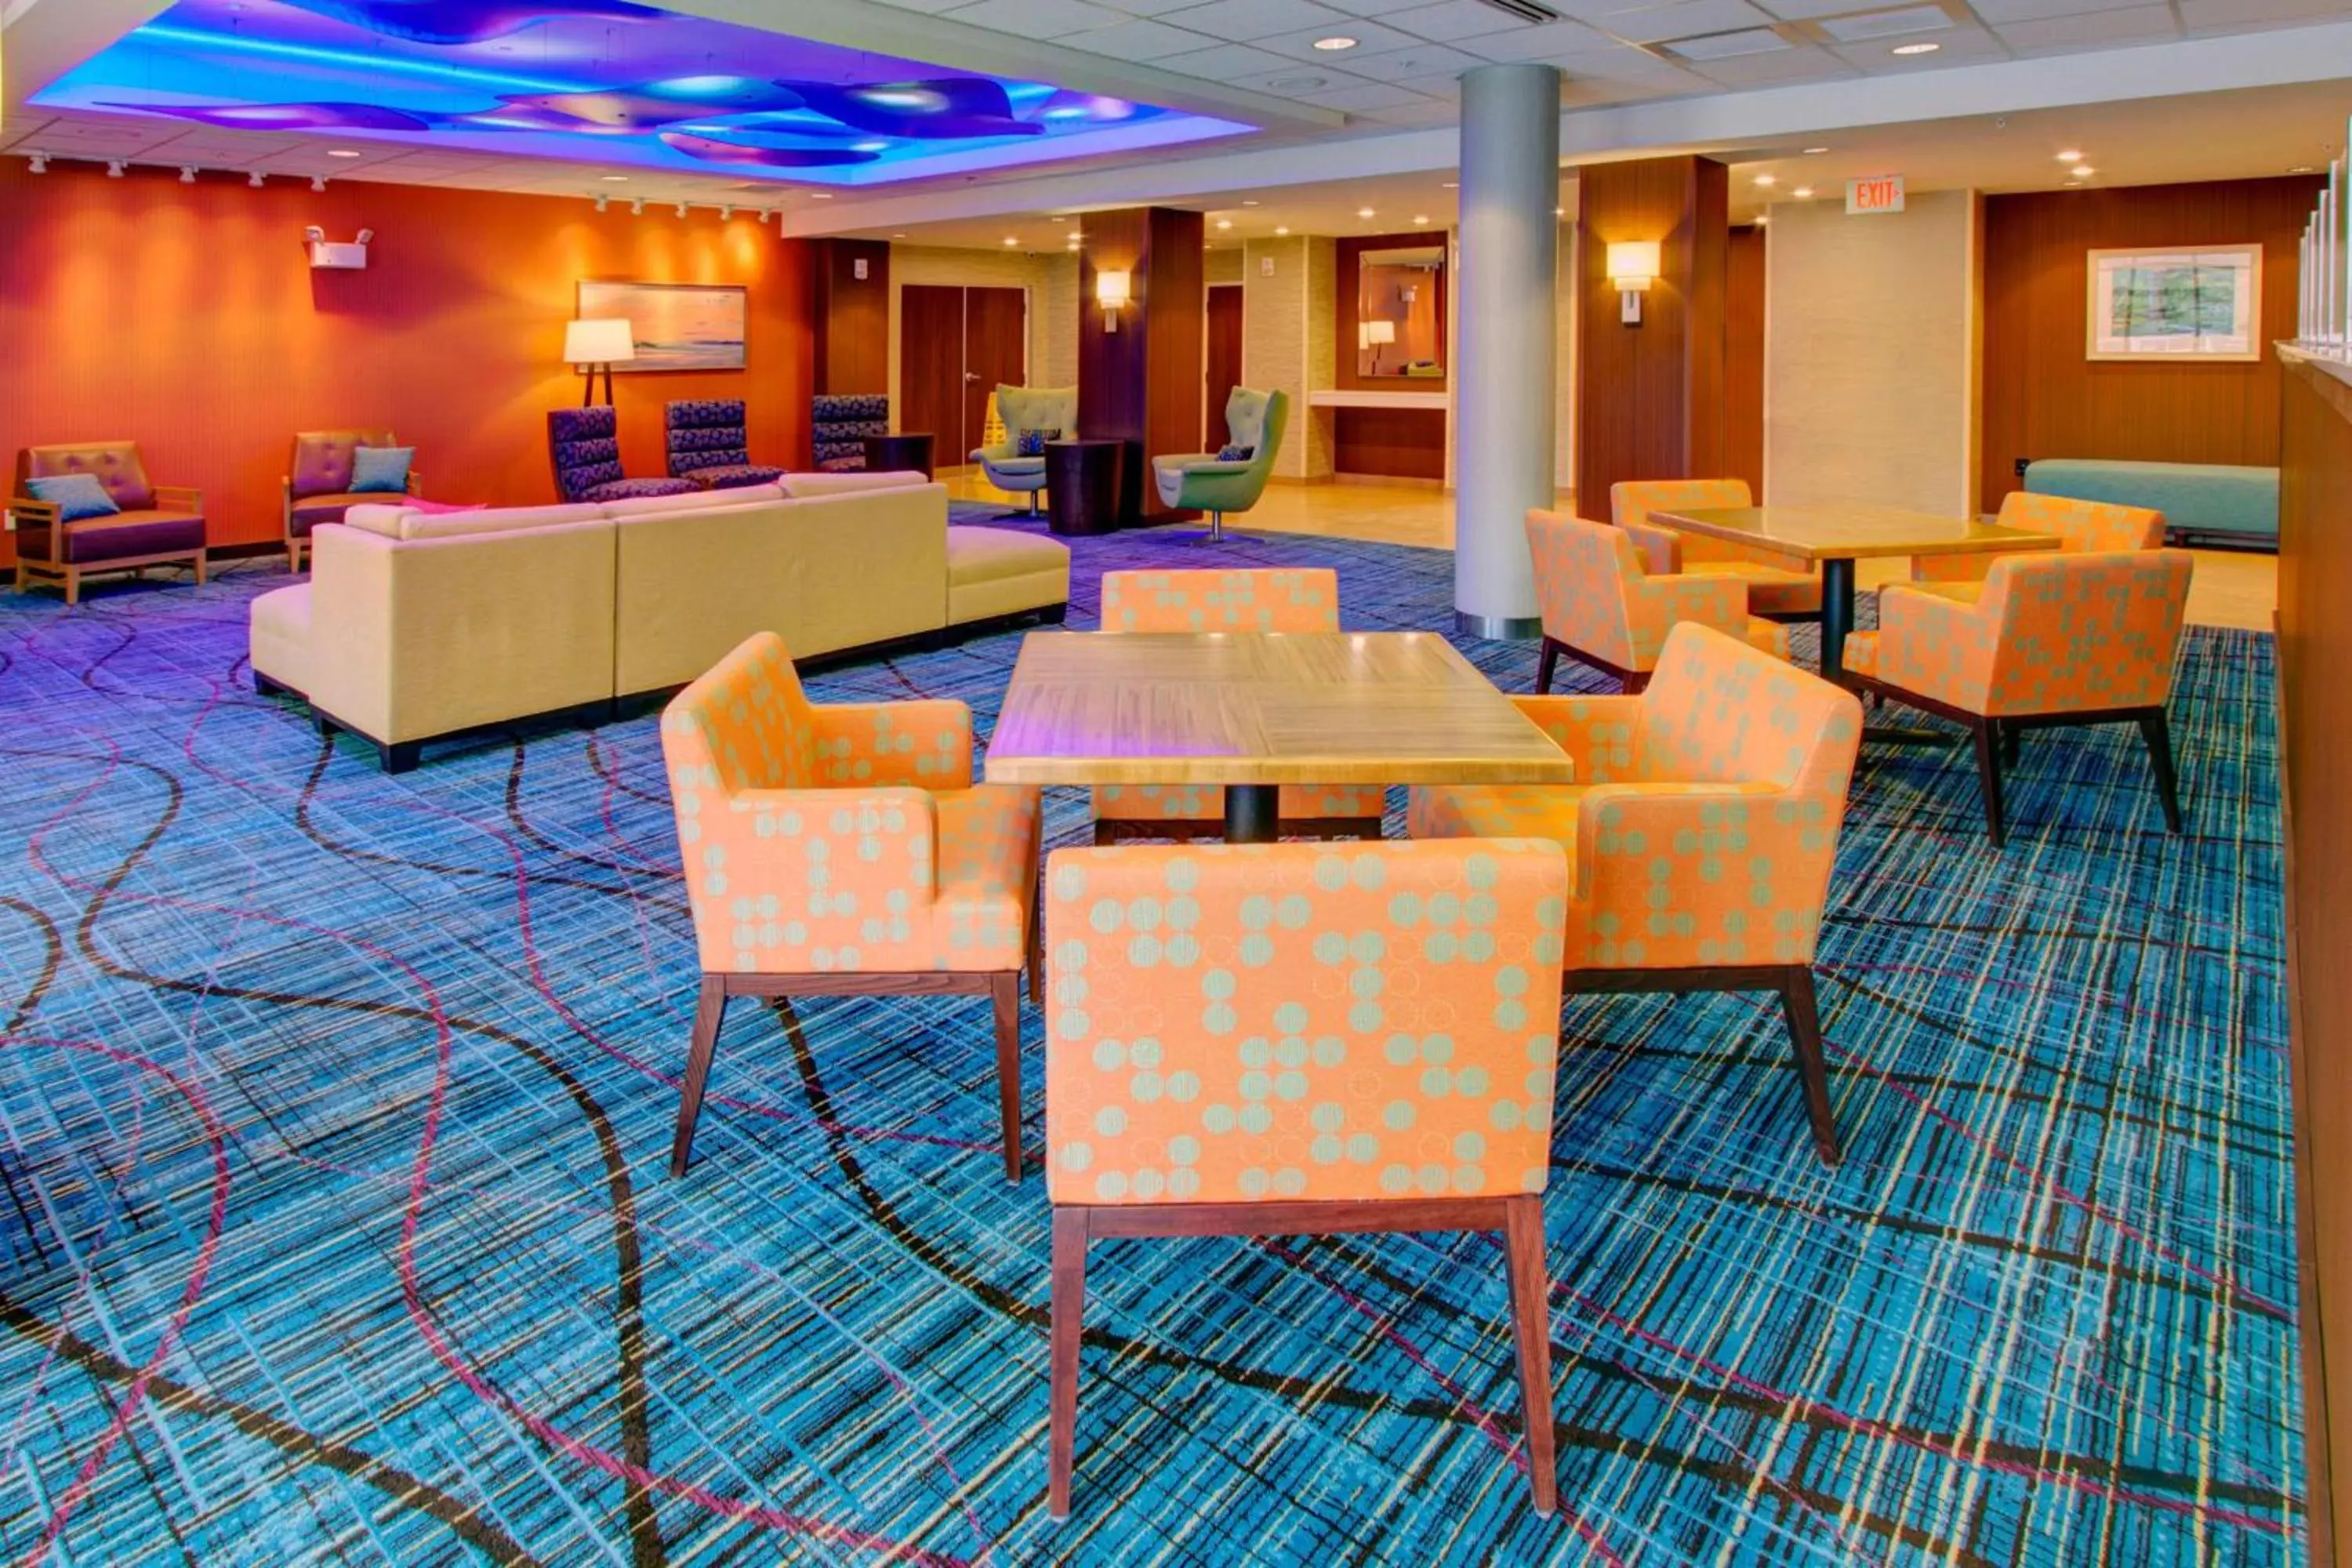 Lobby or reception in Fairfield Inn & Suites by Marriott Rehoboth Beach